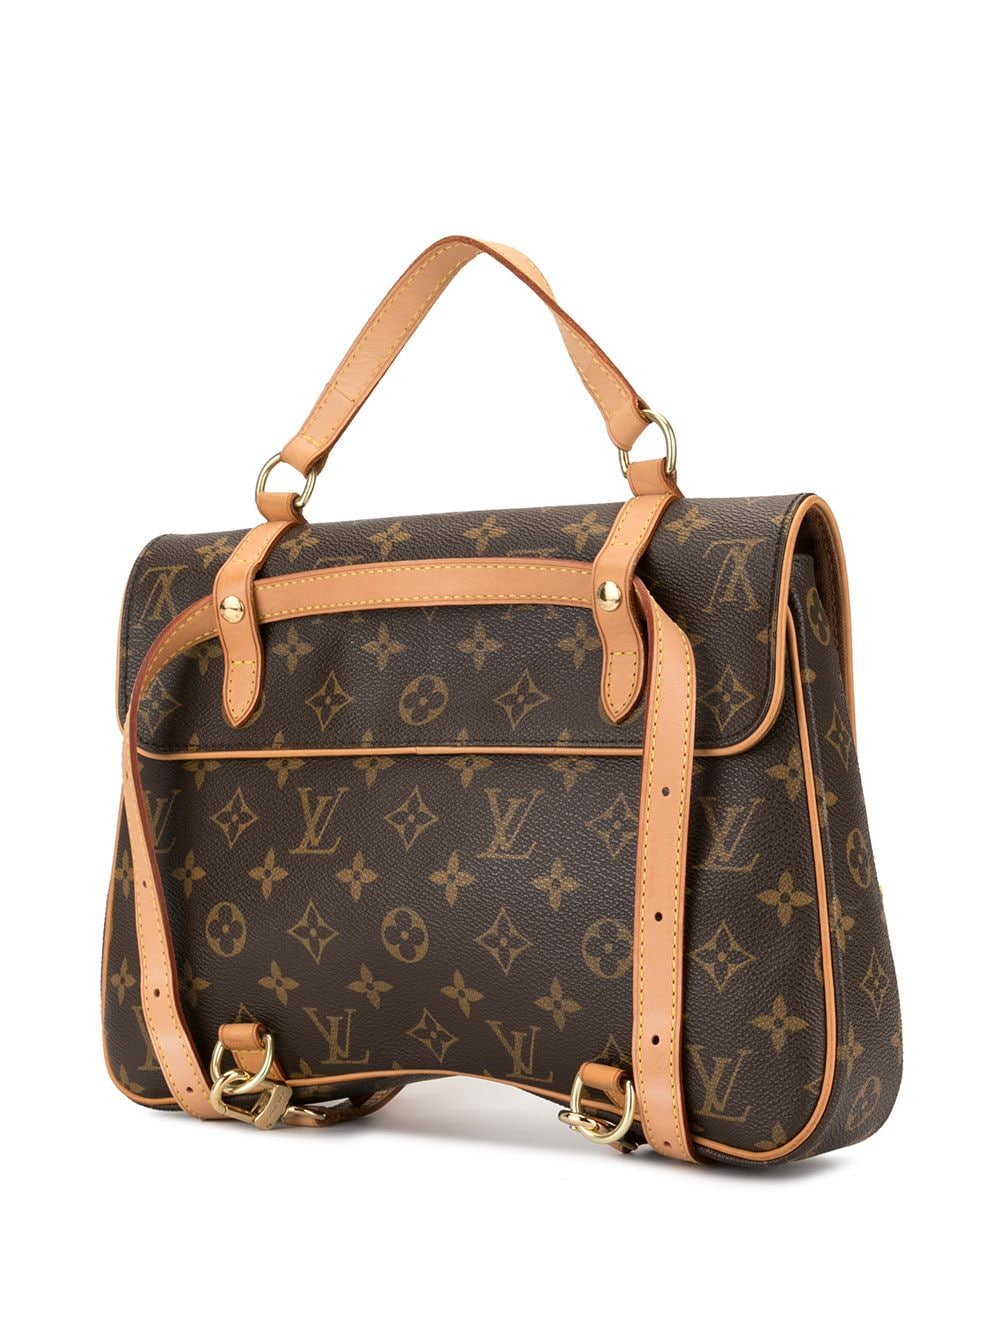 Louis Vuitton Monogram Canvas Marelle Sac A Dos Convertible Bag